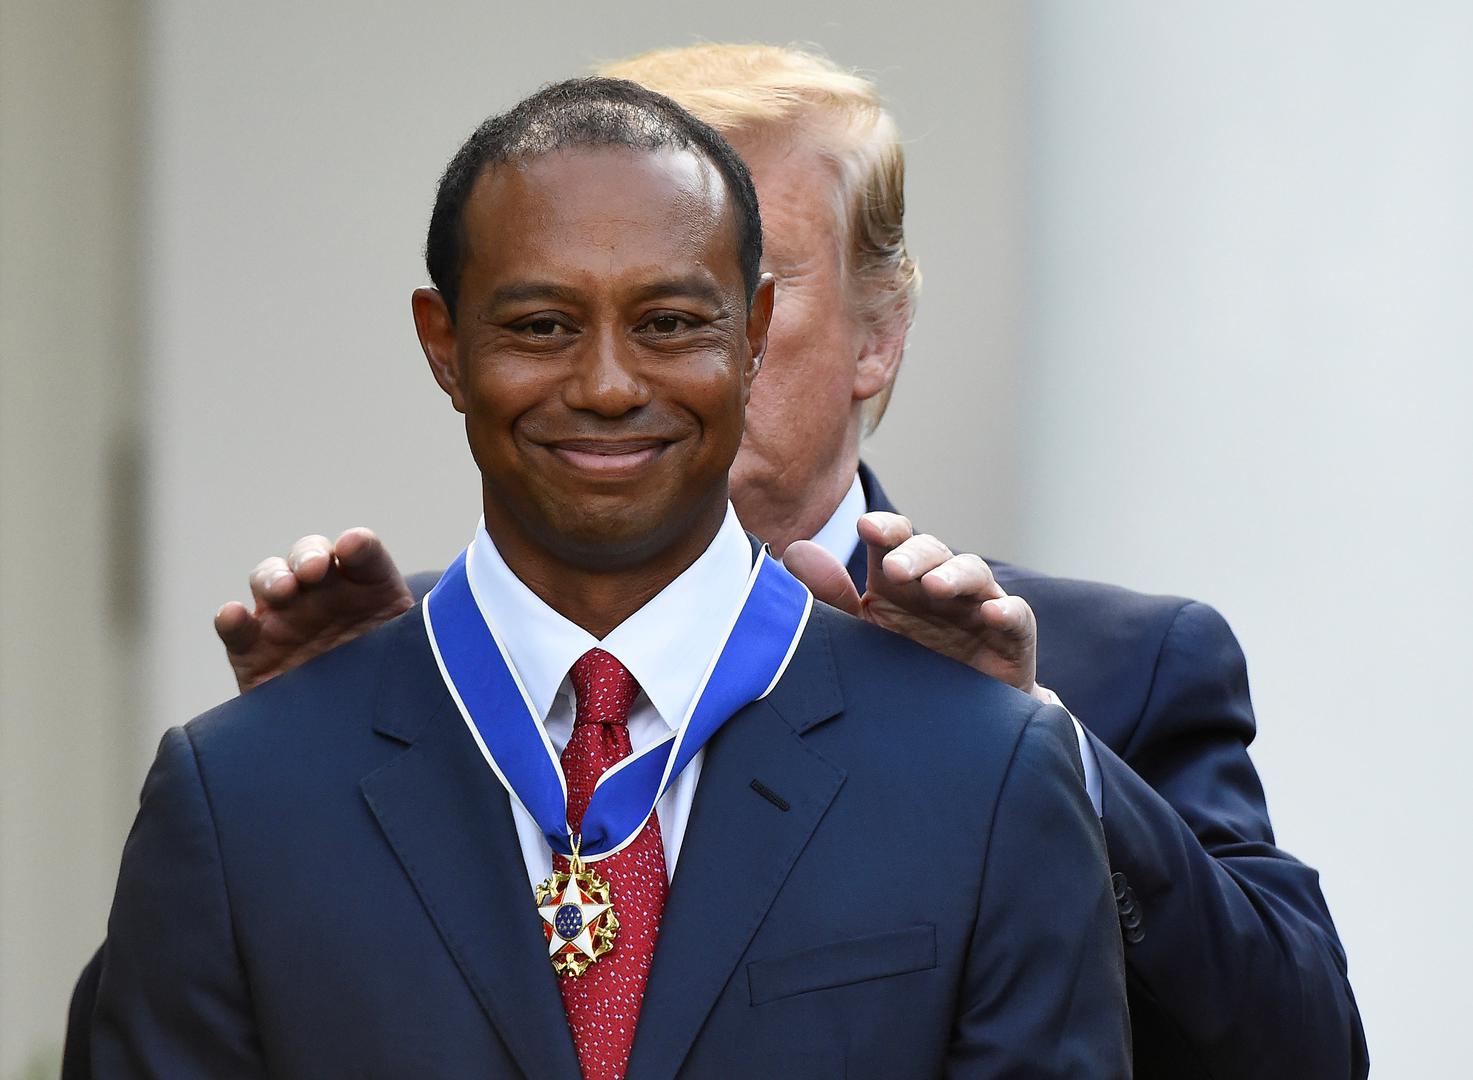 Američki predsjednik Donald Trump je u ponedjeljak dodijelio najviše civilno odlikovanje u SAD-u "predsjedničko odličje slobode"  43-godišnjem golf igraču Tigeru Woodsu.